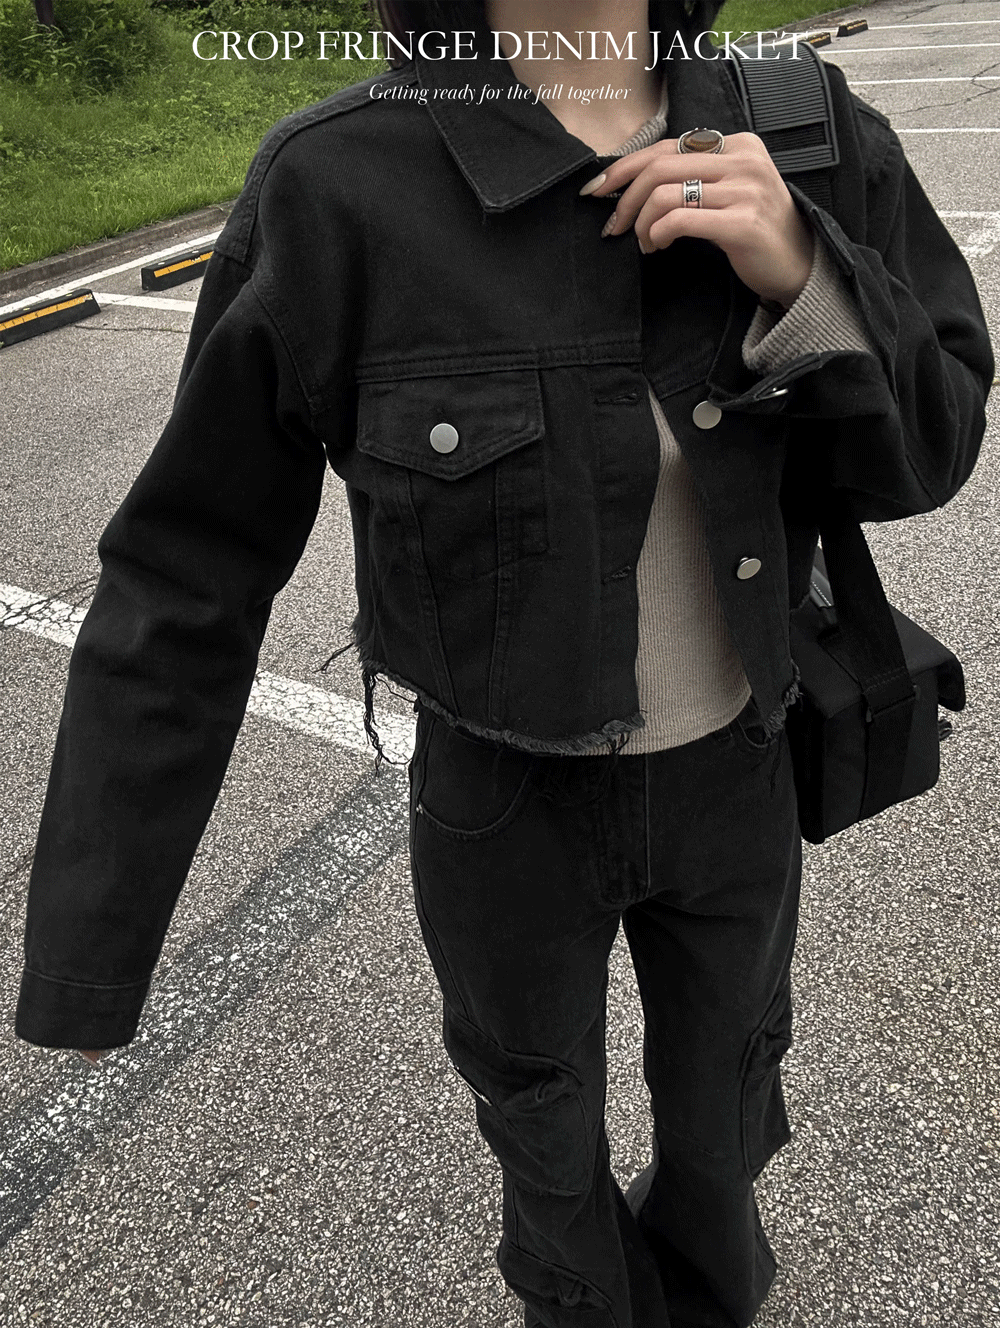 Crop fringe denim jacket